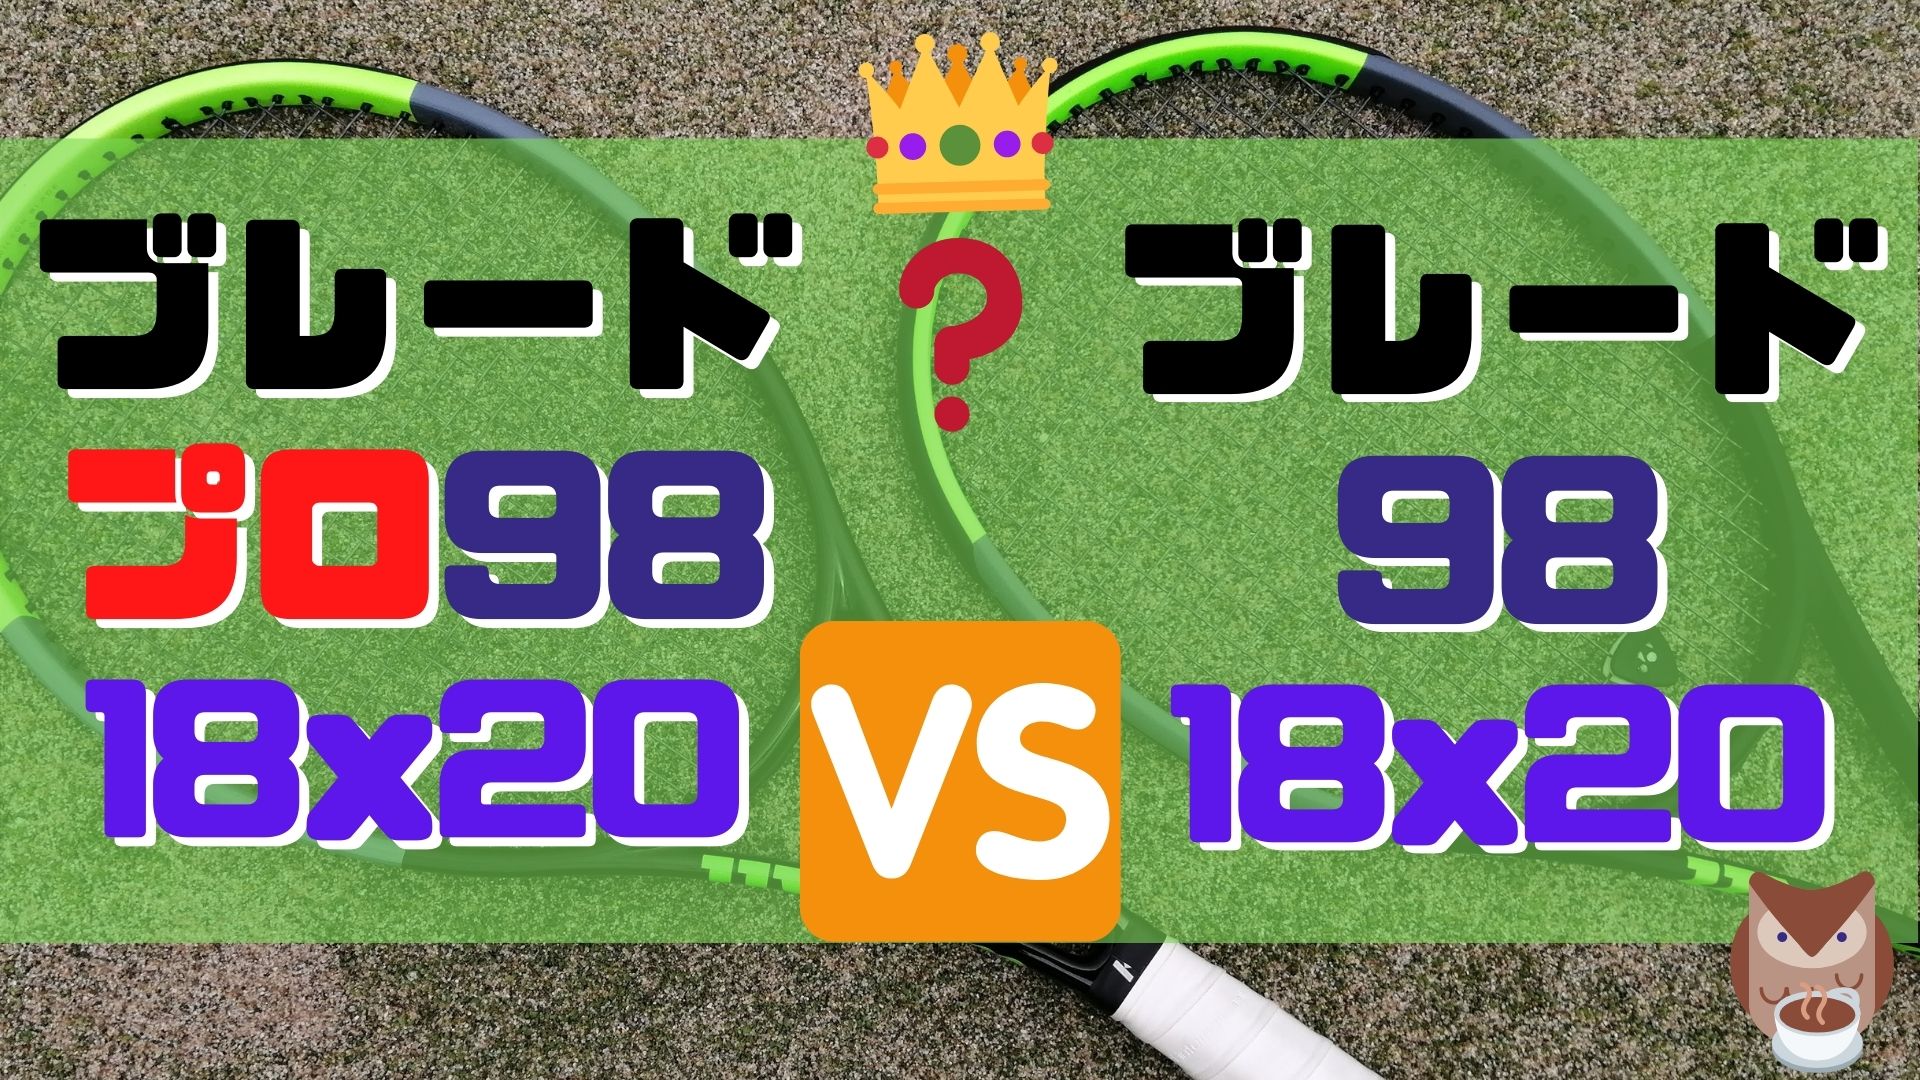 ブレードプロ 98(18×20) vs. ブレード98(18×20)【インプレ比較 